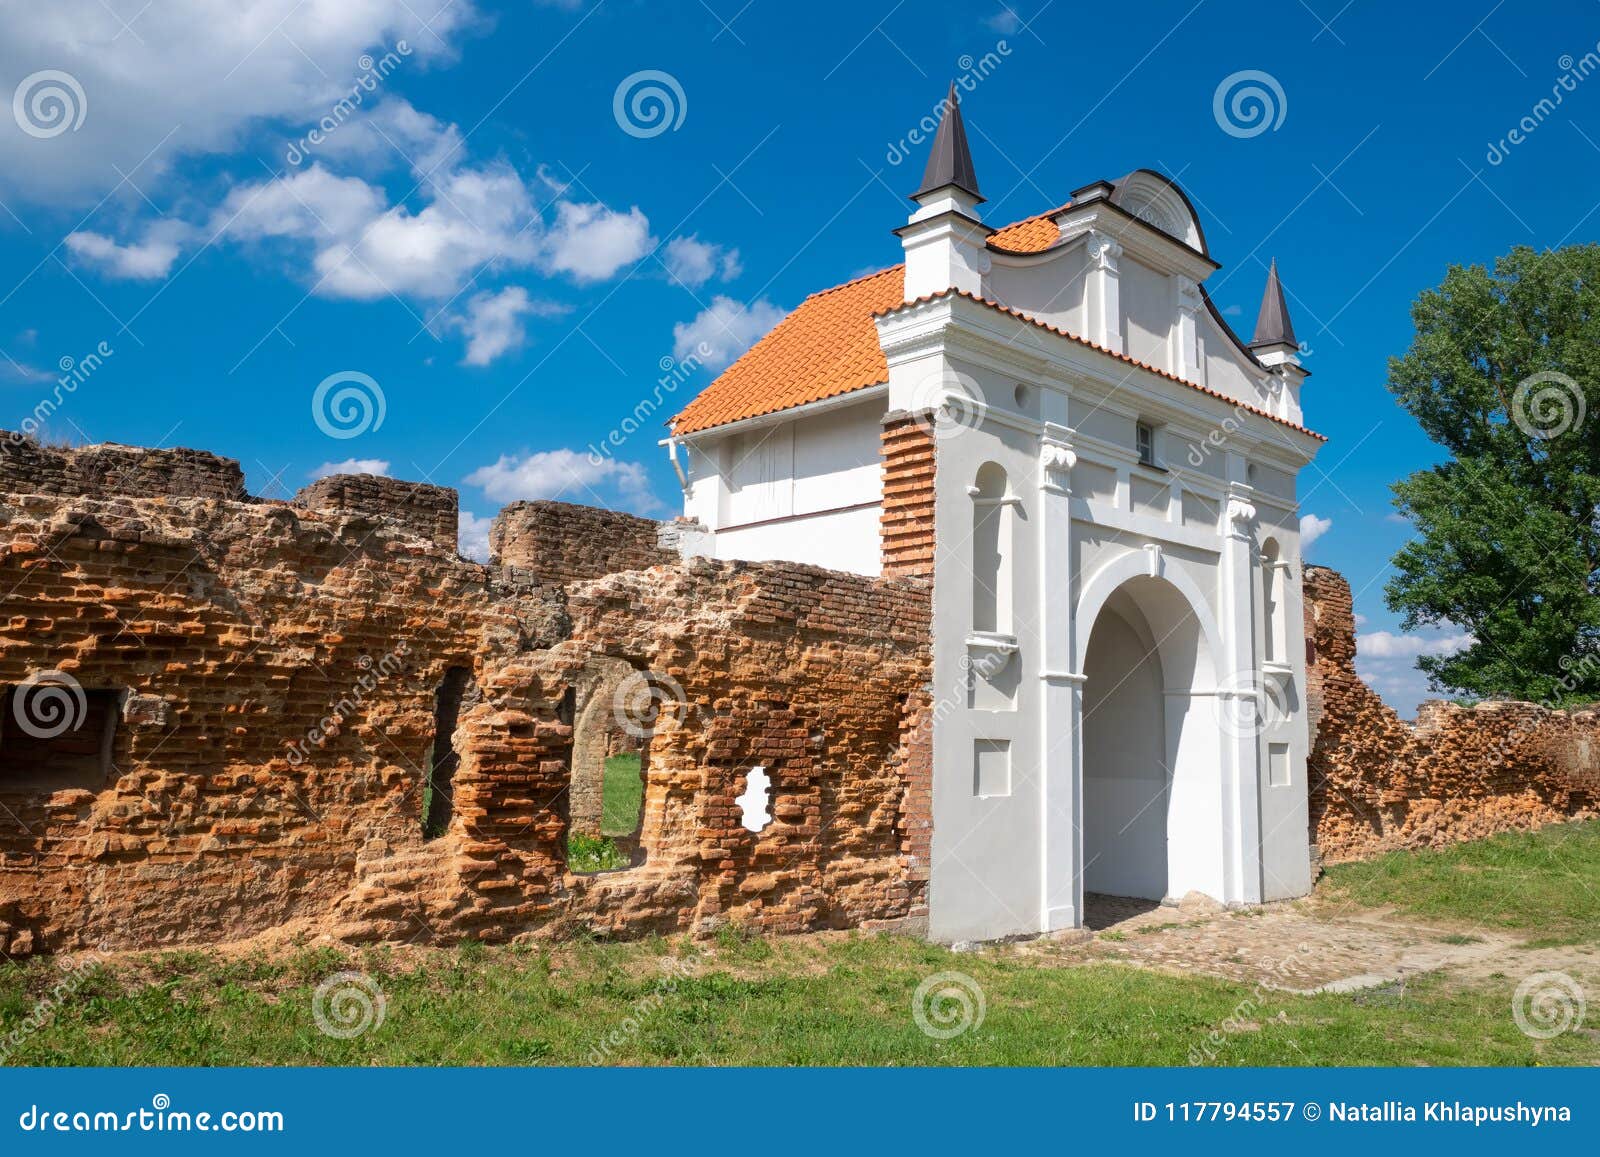 gate of carthusian monastery 1648-1666 years in beryoza, brest region, belarus.